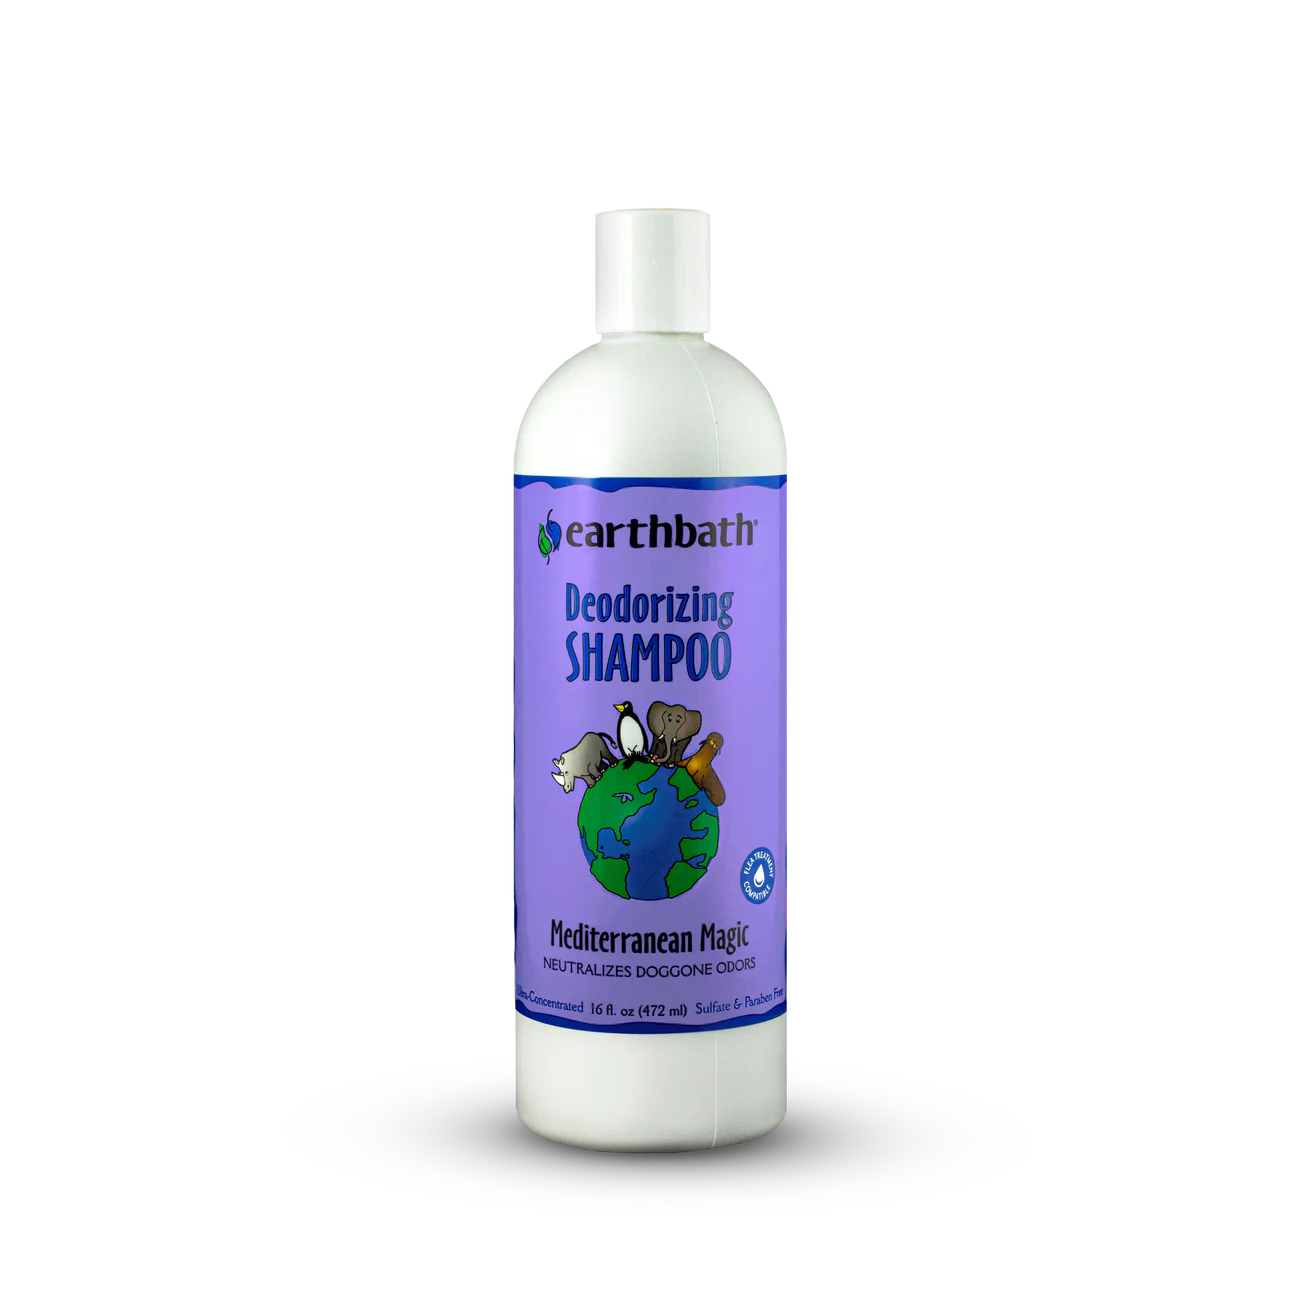 Earthbath Shampoo - Mediterranean Magic